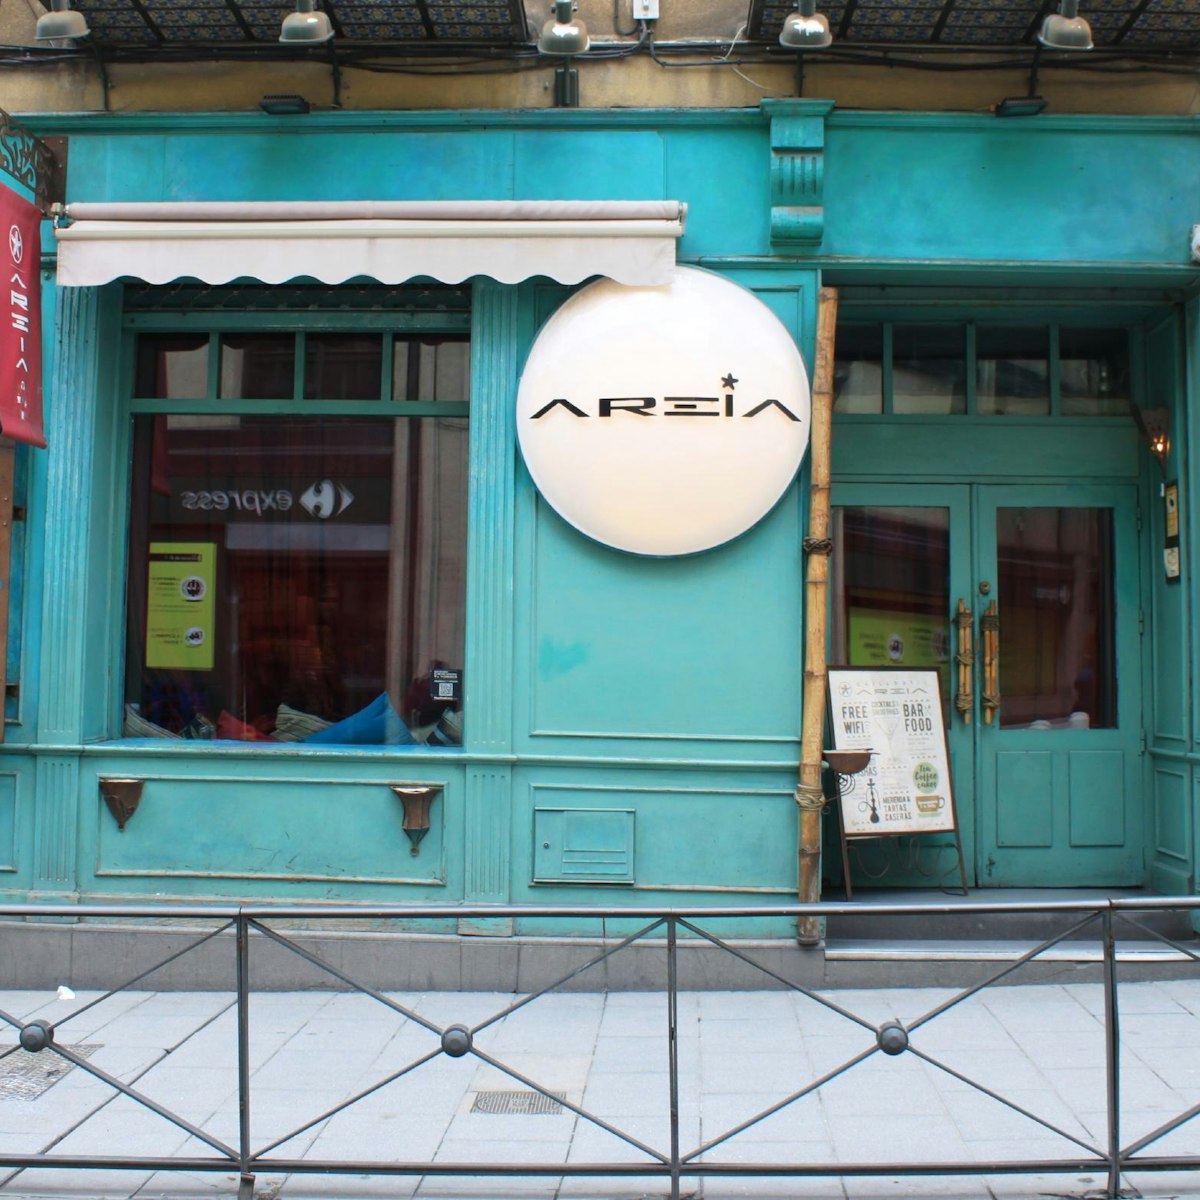 Areia's bar restaurant facade.